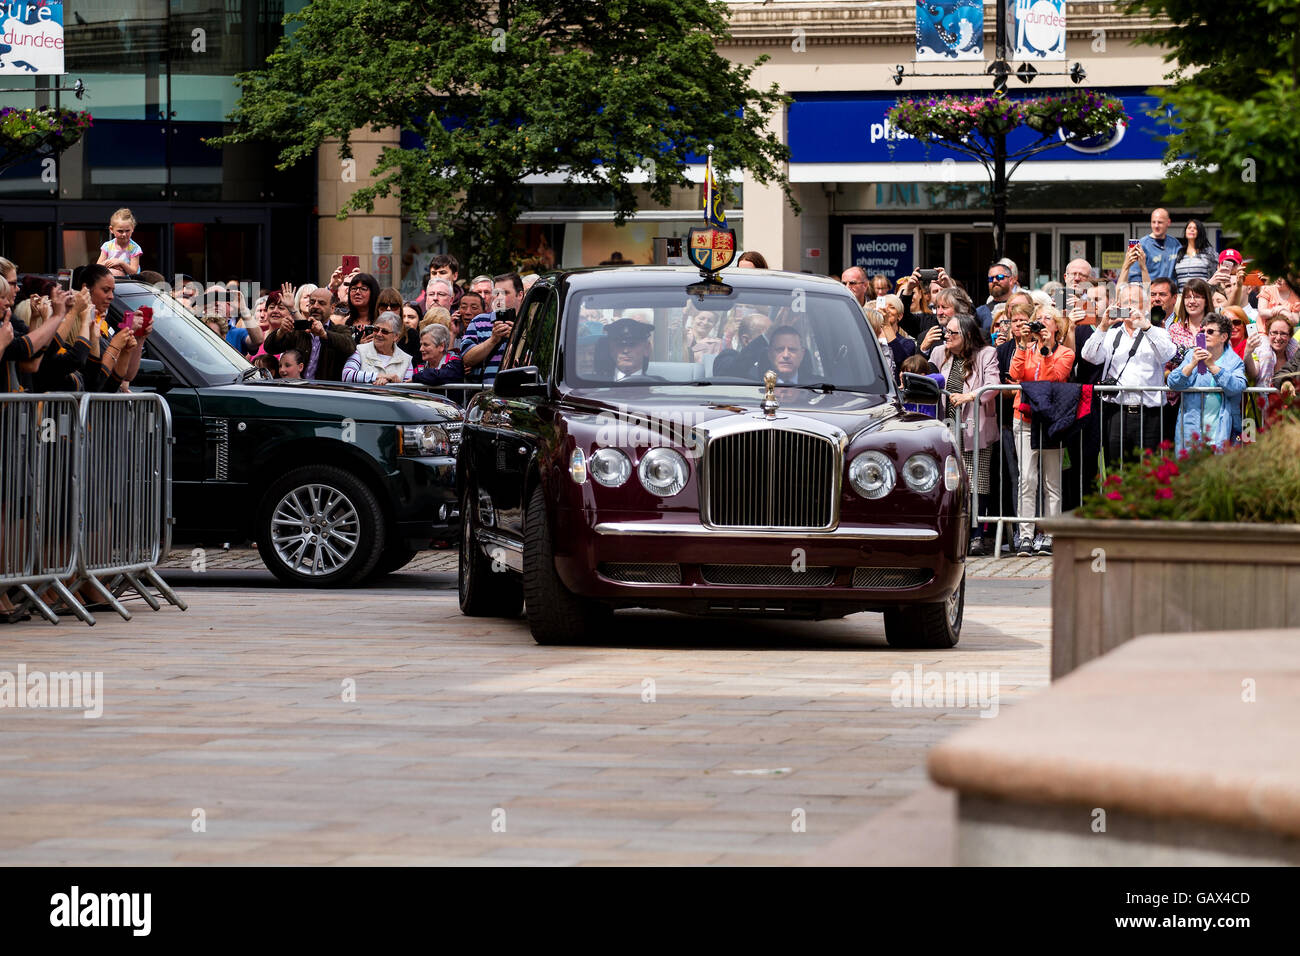 Dundee, Tayside, Scotland, UK. 6. Juli 2016. Ihre Majestät die Königin und seine königliche Hoheit Prinz Philip kommen bei den Handelskammern in den Stadtplatz heute während ihrer königlichen Besuch in Dundee. Bildnachweis: Dundee Photographics / Alamy Live News Stockfoto